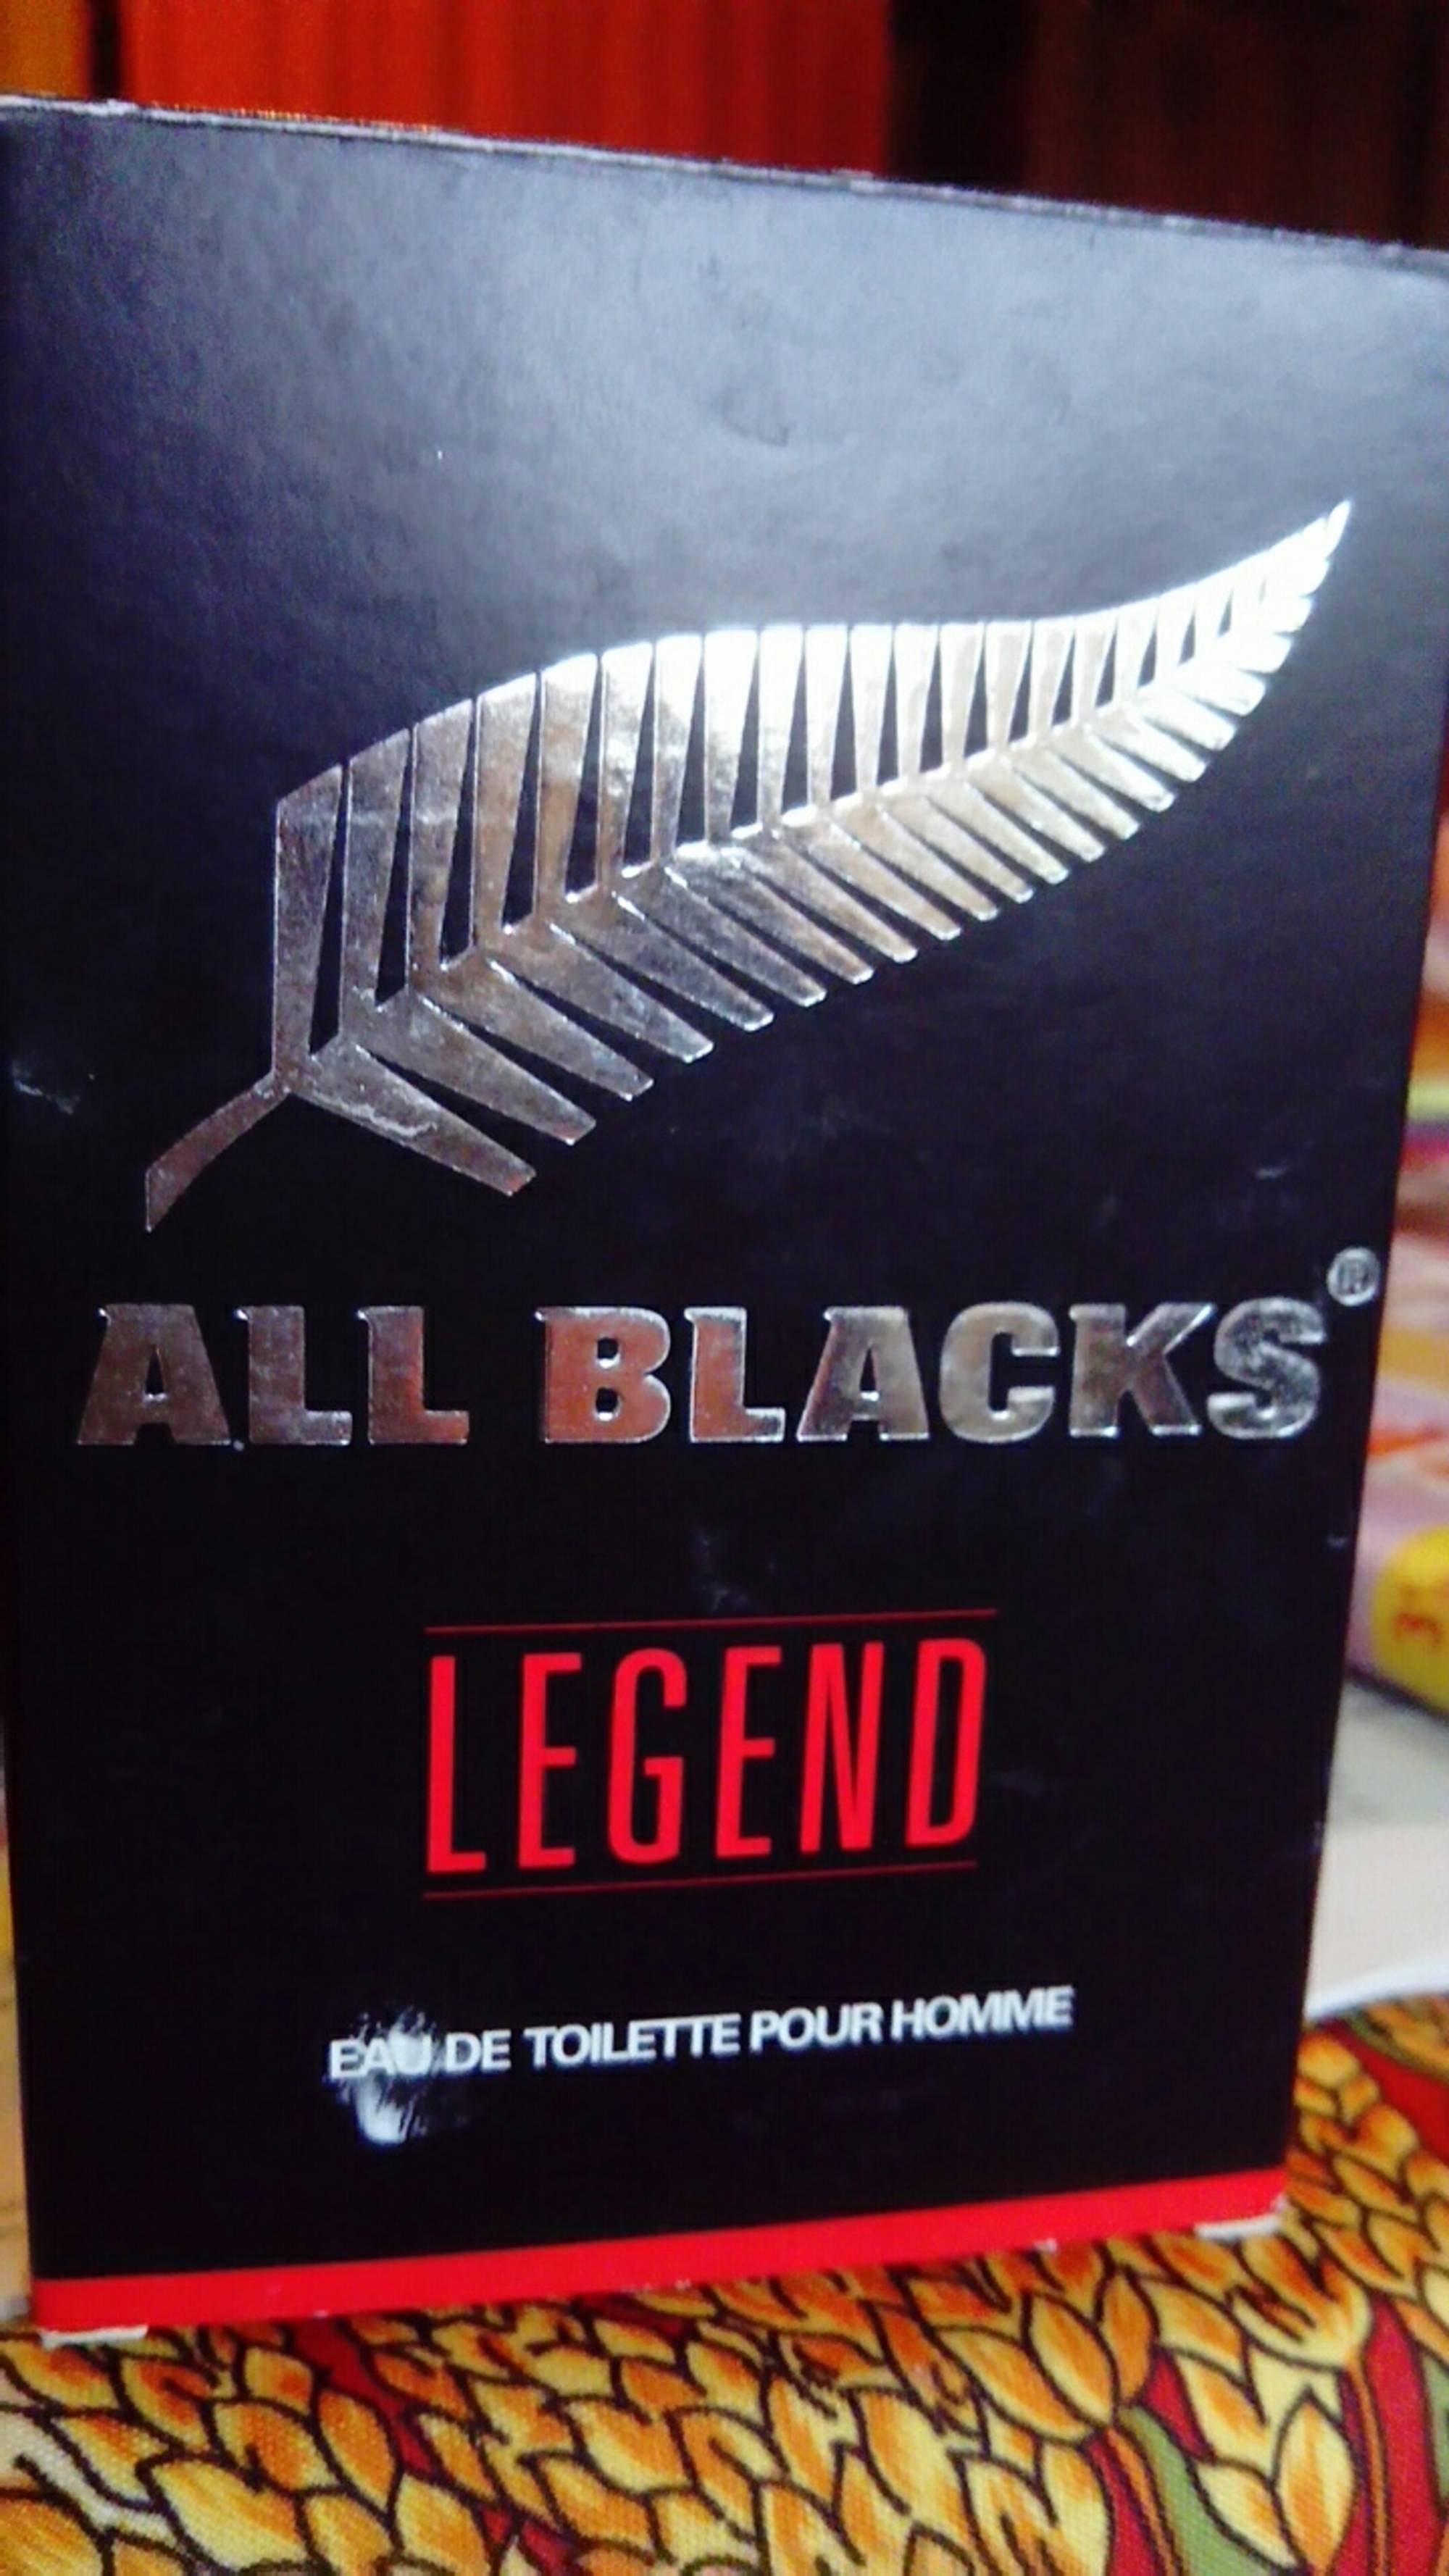 ALL BLACKS - Legend - Eau de toilette pour homme